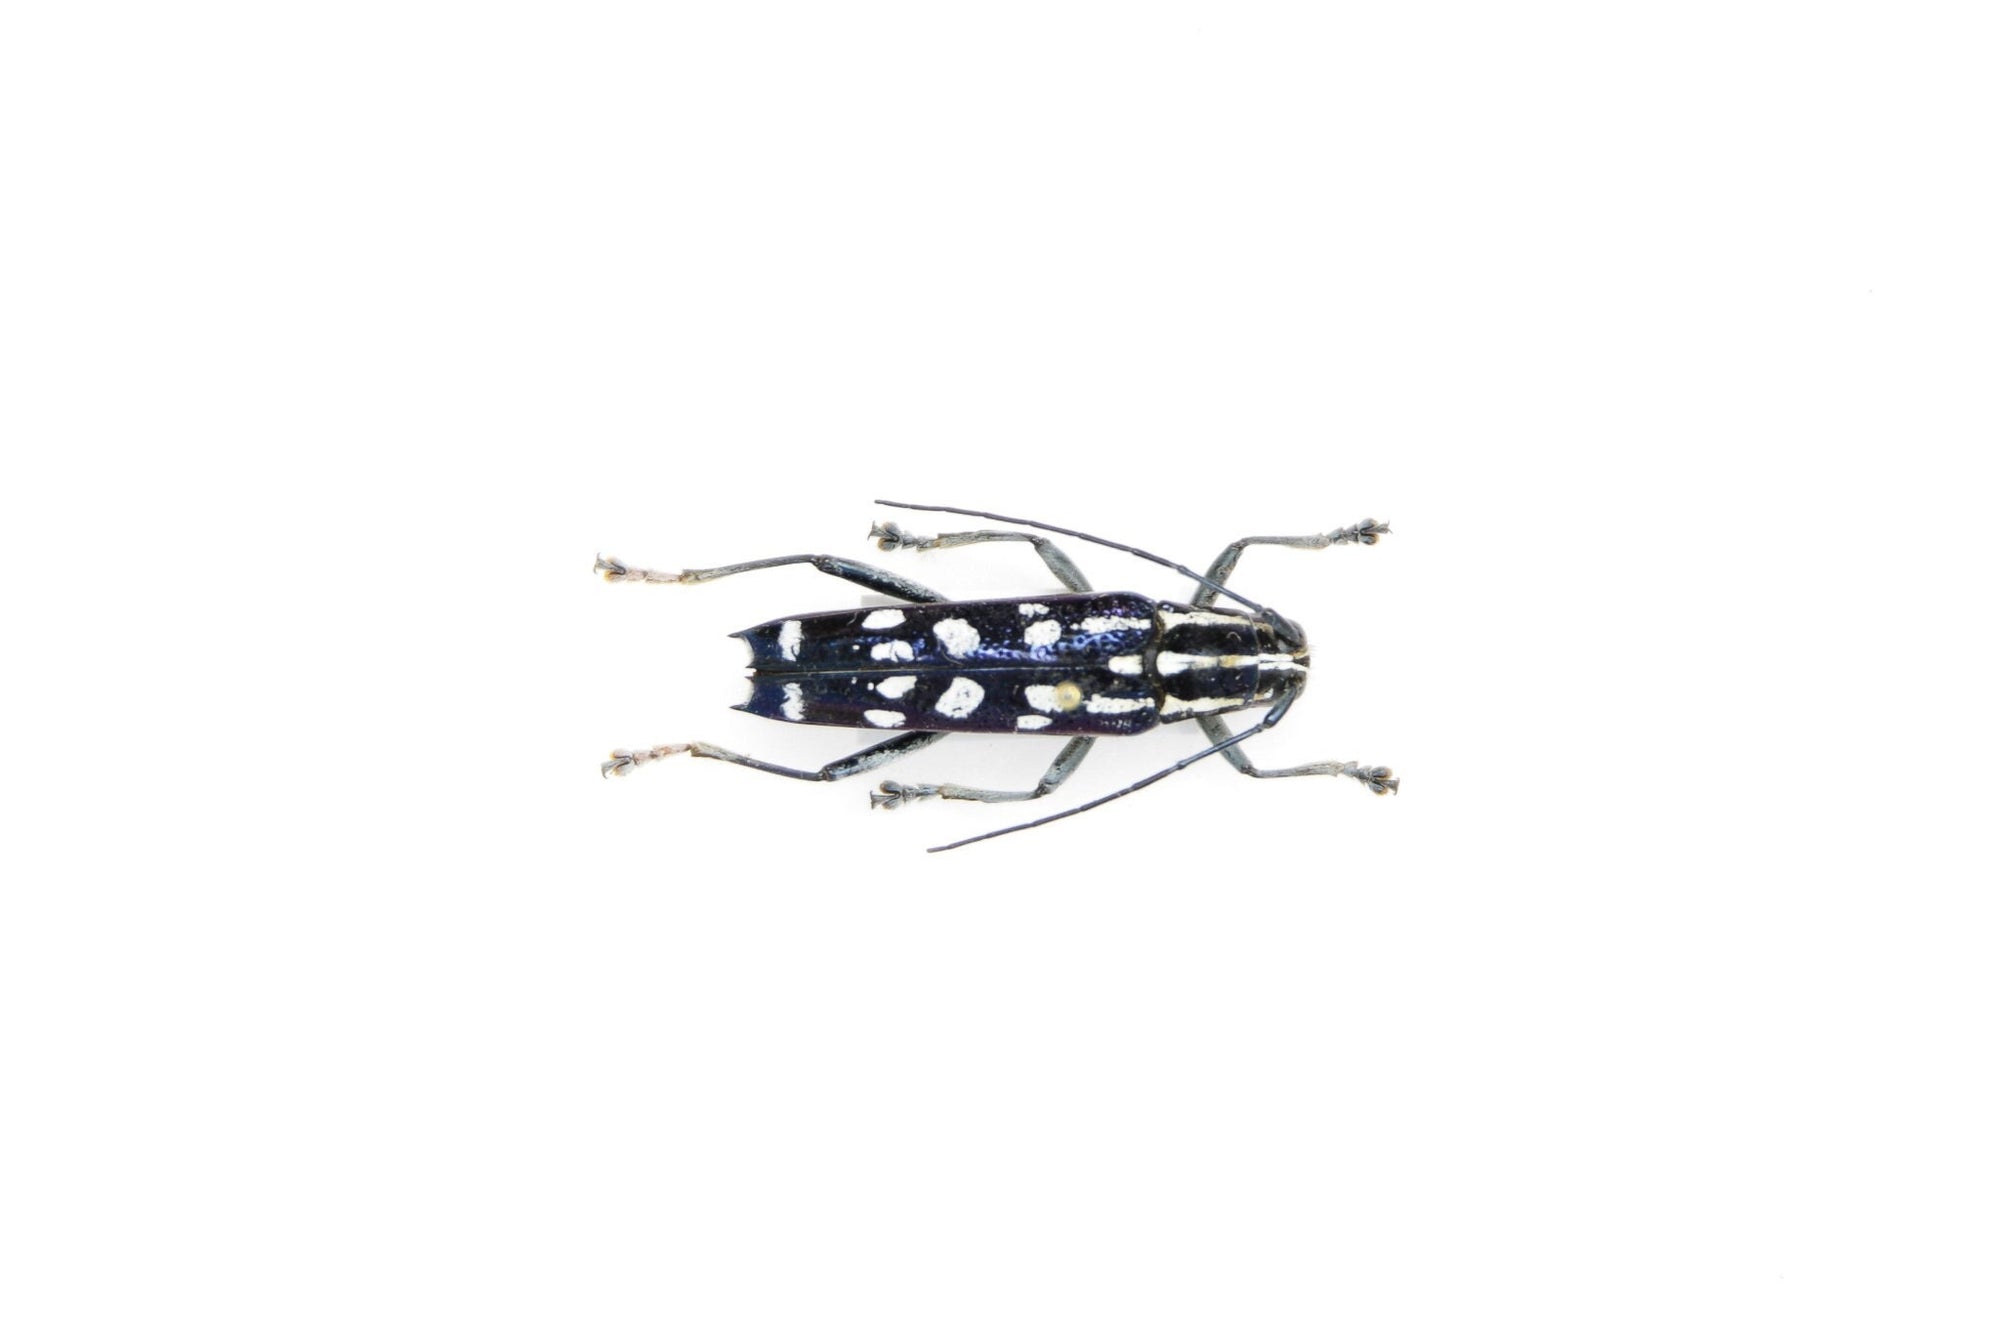 Glenea elegans, Thailand, A1 Real Beetle Pinned Set Specimen, Entomology Taxidermy #OC122